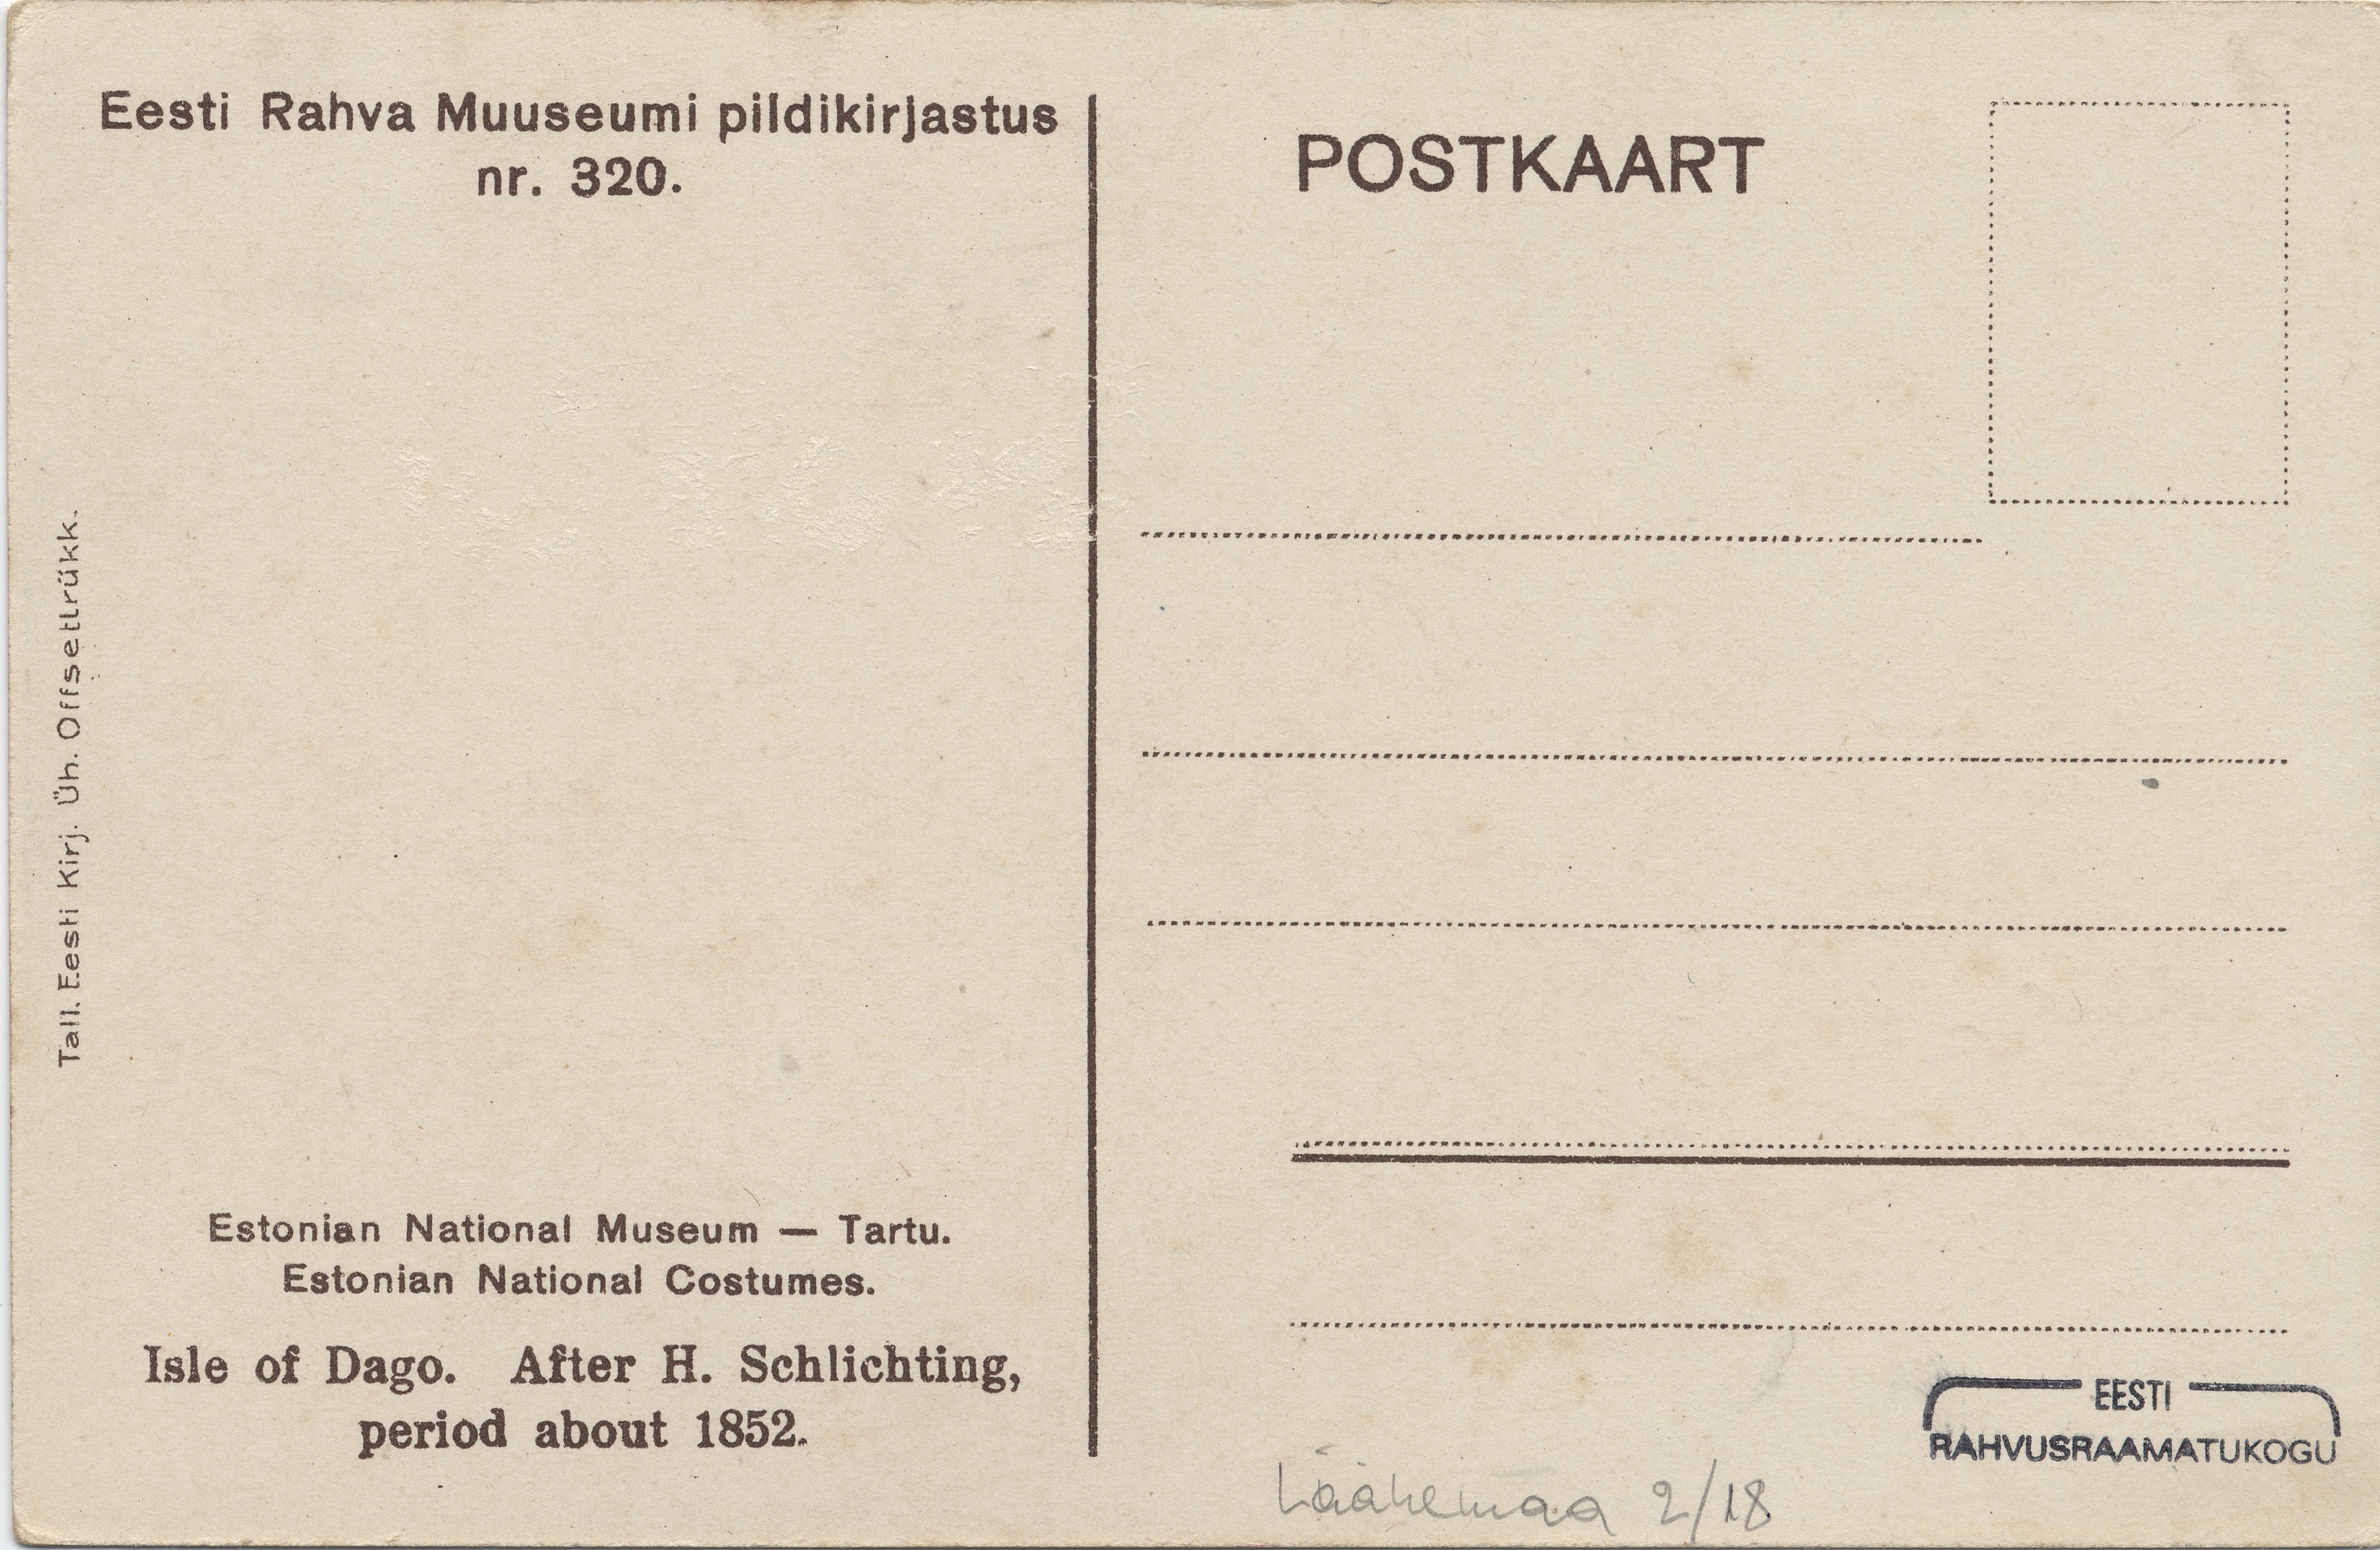 Hiiumaa : h. Schlichtingi nach 1852 a : Isle of Dago : after h. Schlichting period about 1852